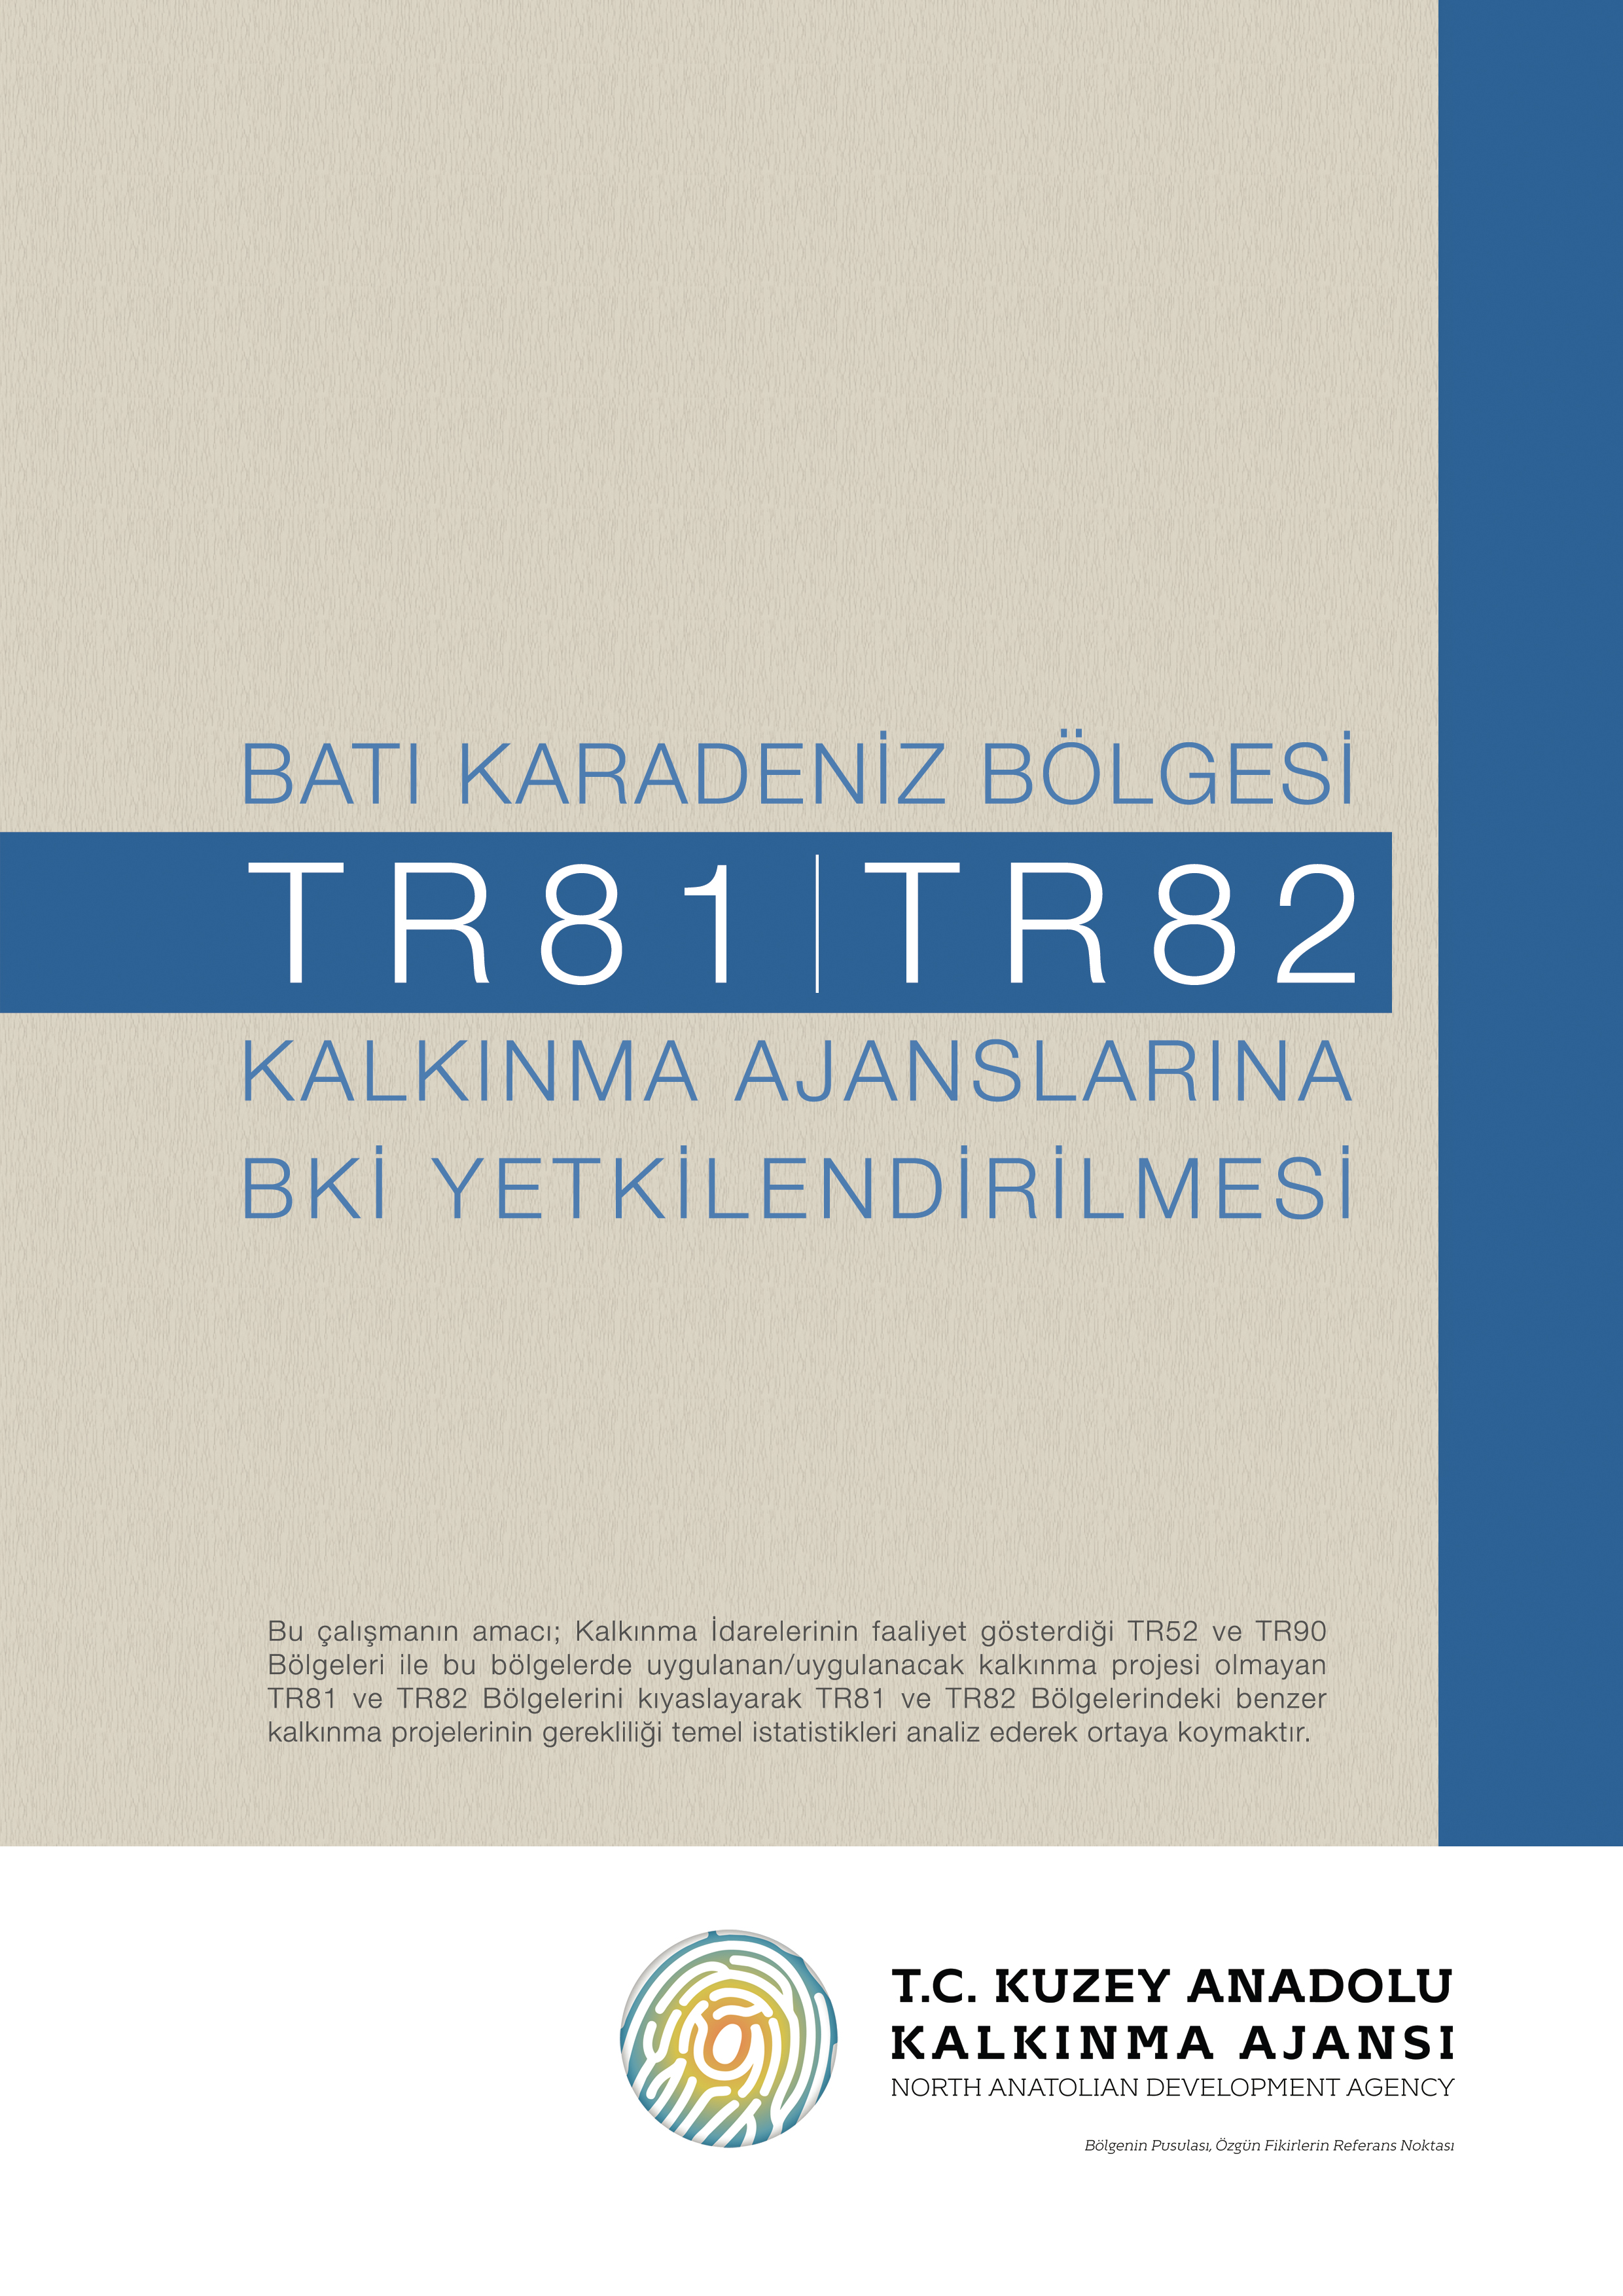 Batý Karadeniz Bölgesi (TR81, TR82) Kalkýnma Ajanslarýna BKÝ Yetkilendirmesi